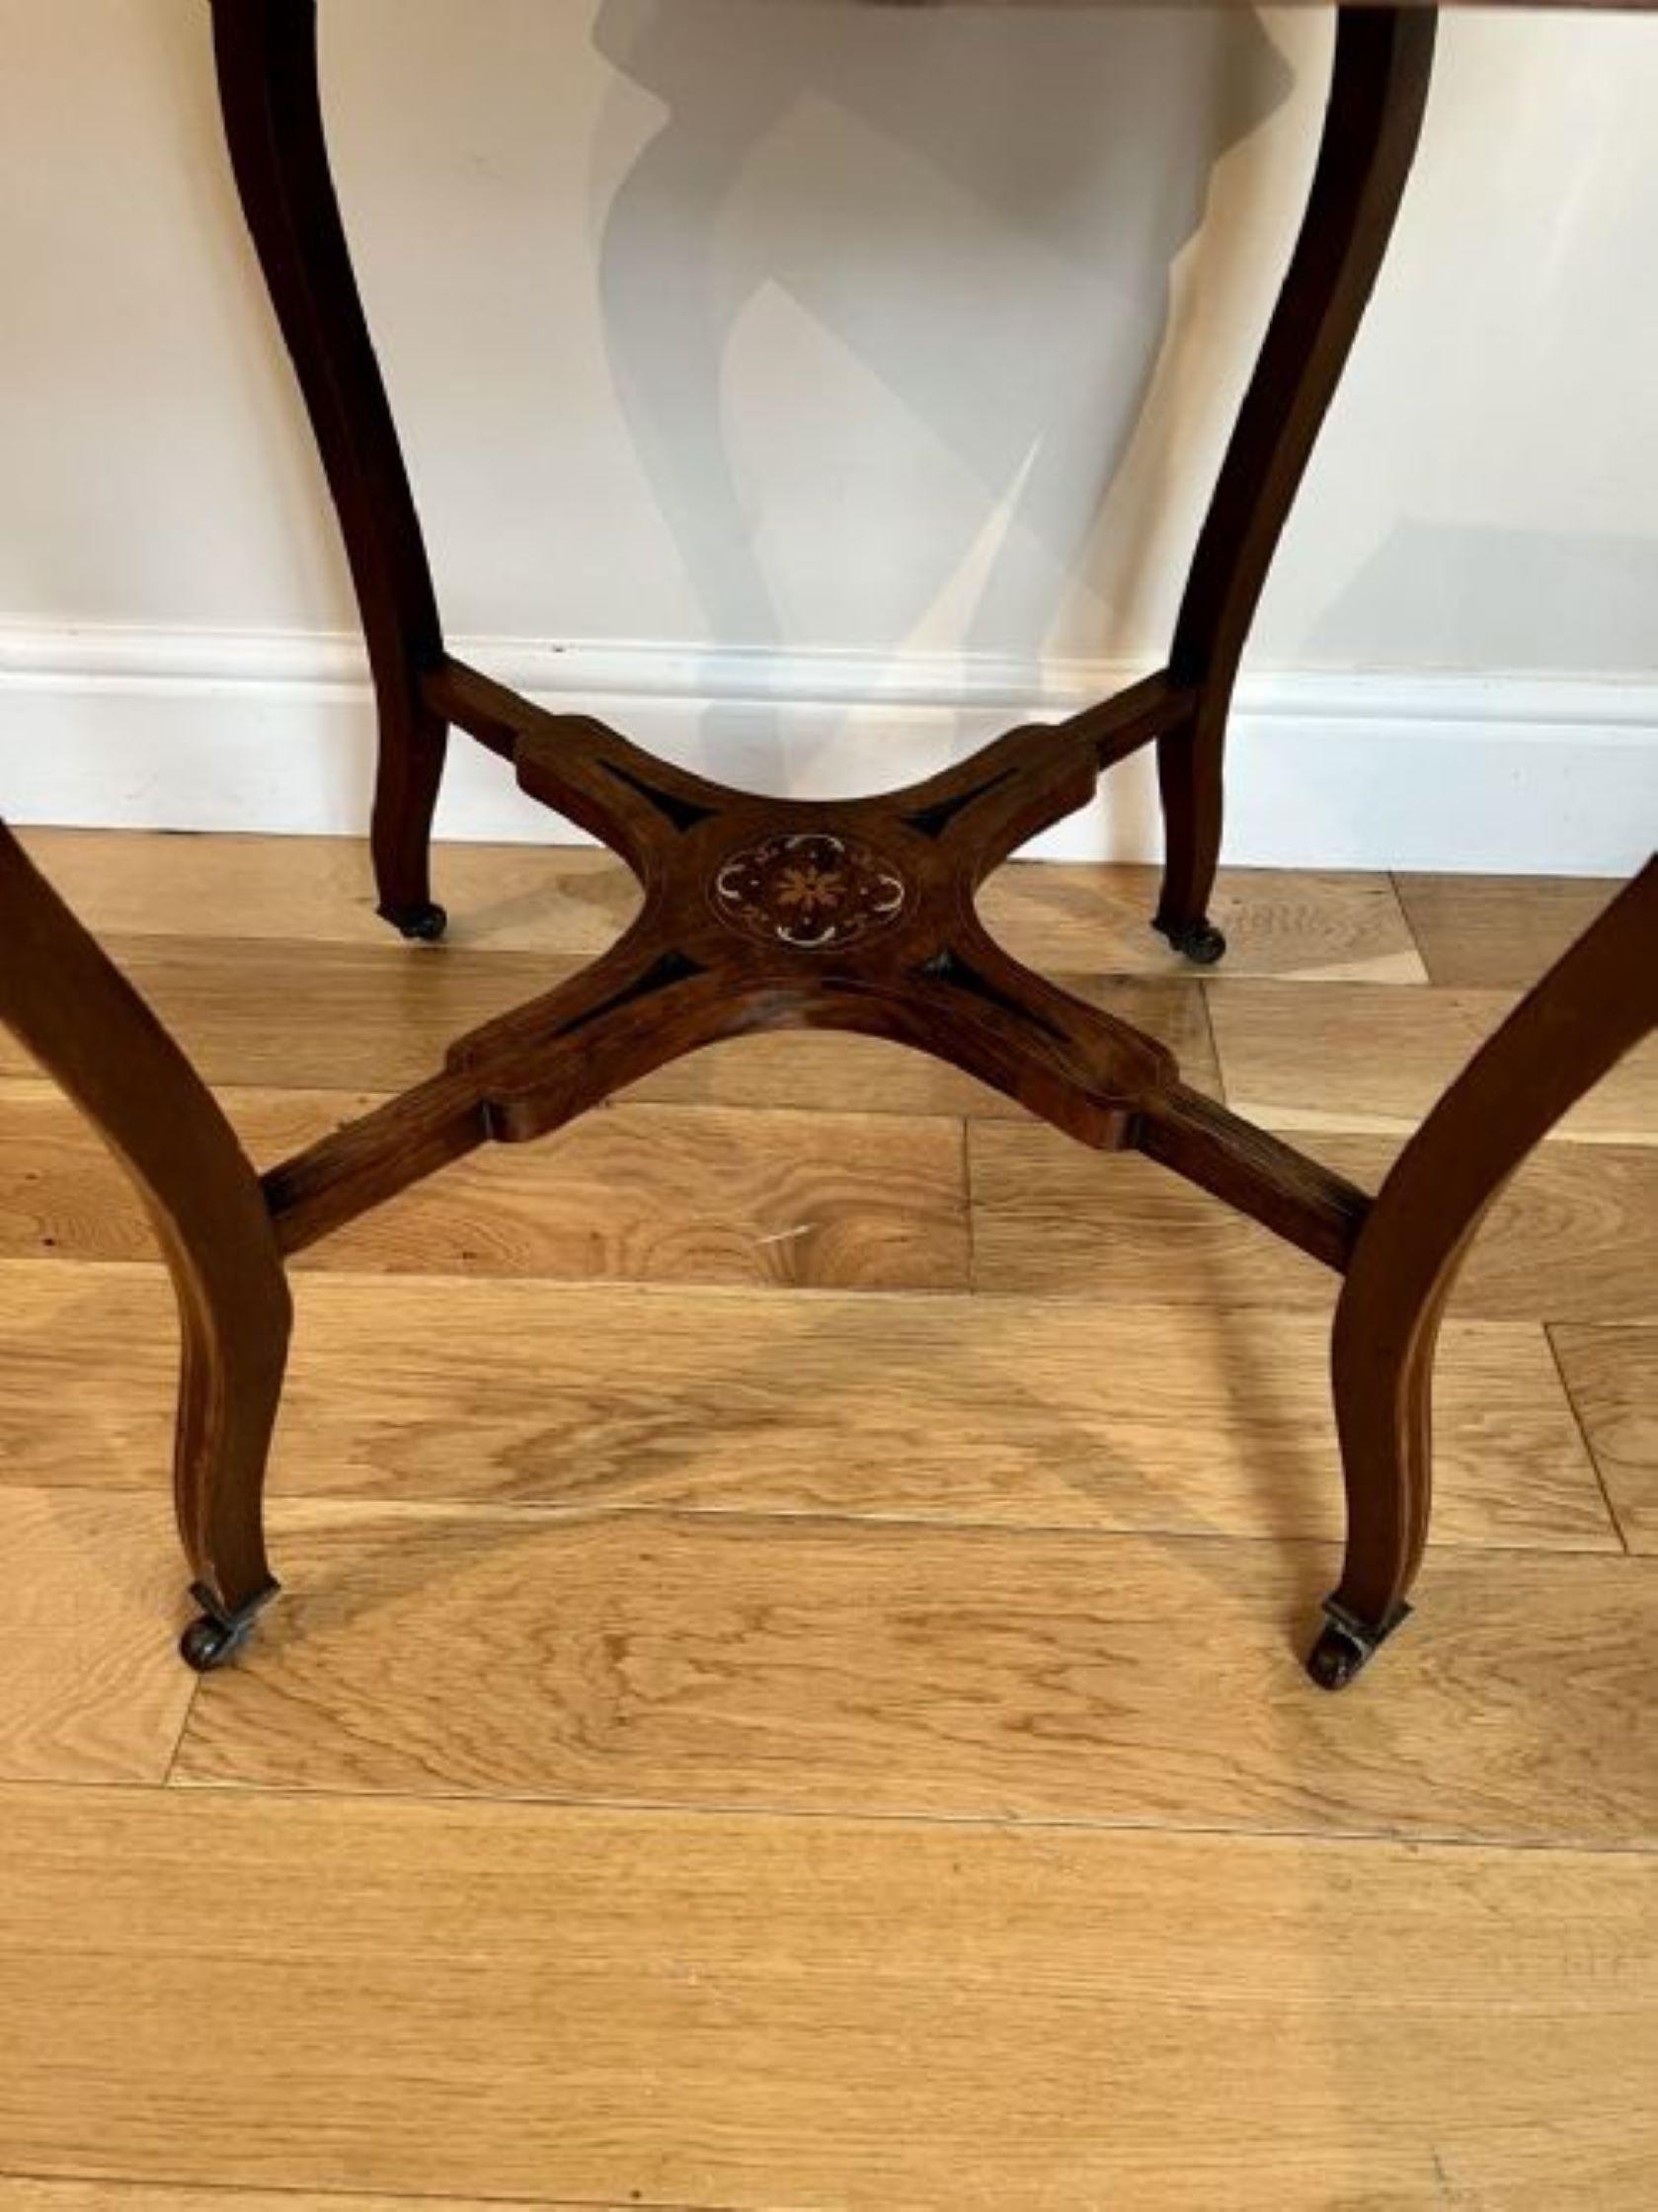 Antiker viktorianischer Tisch mit Intarsien aus Palisander, mit einer geformten Platte aus Palisander mit geformtem Rand, geformtem Fries aus Palisander mit Intarsien, stehend auf geformten Cabriole-Beinen mit den ursprünglichen Rollen, die durch